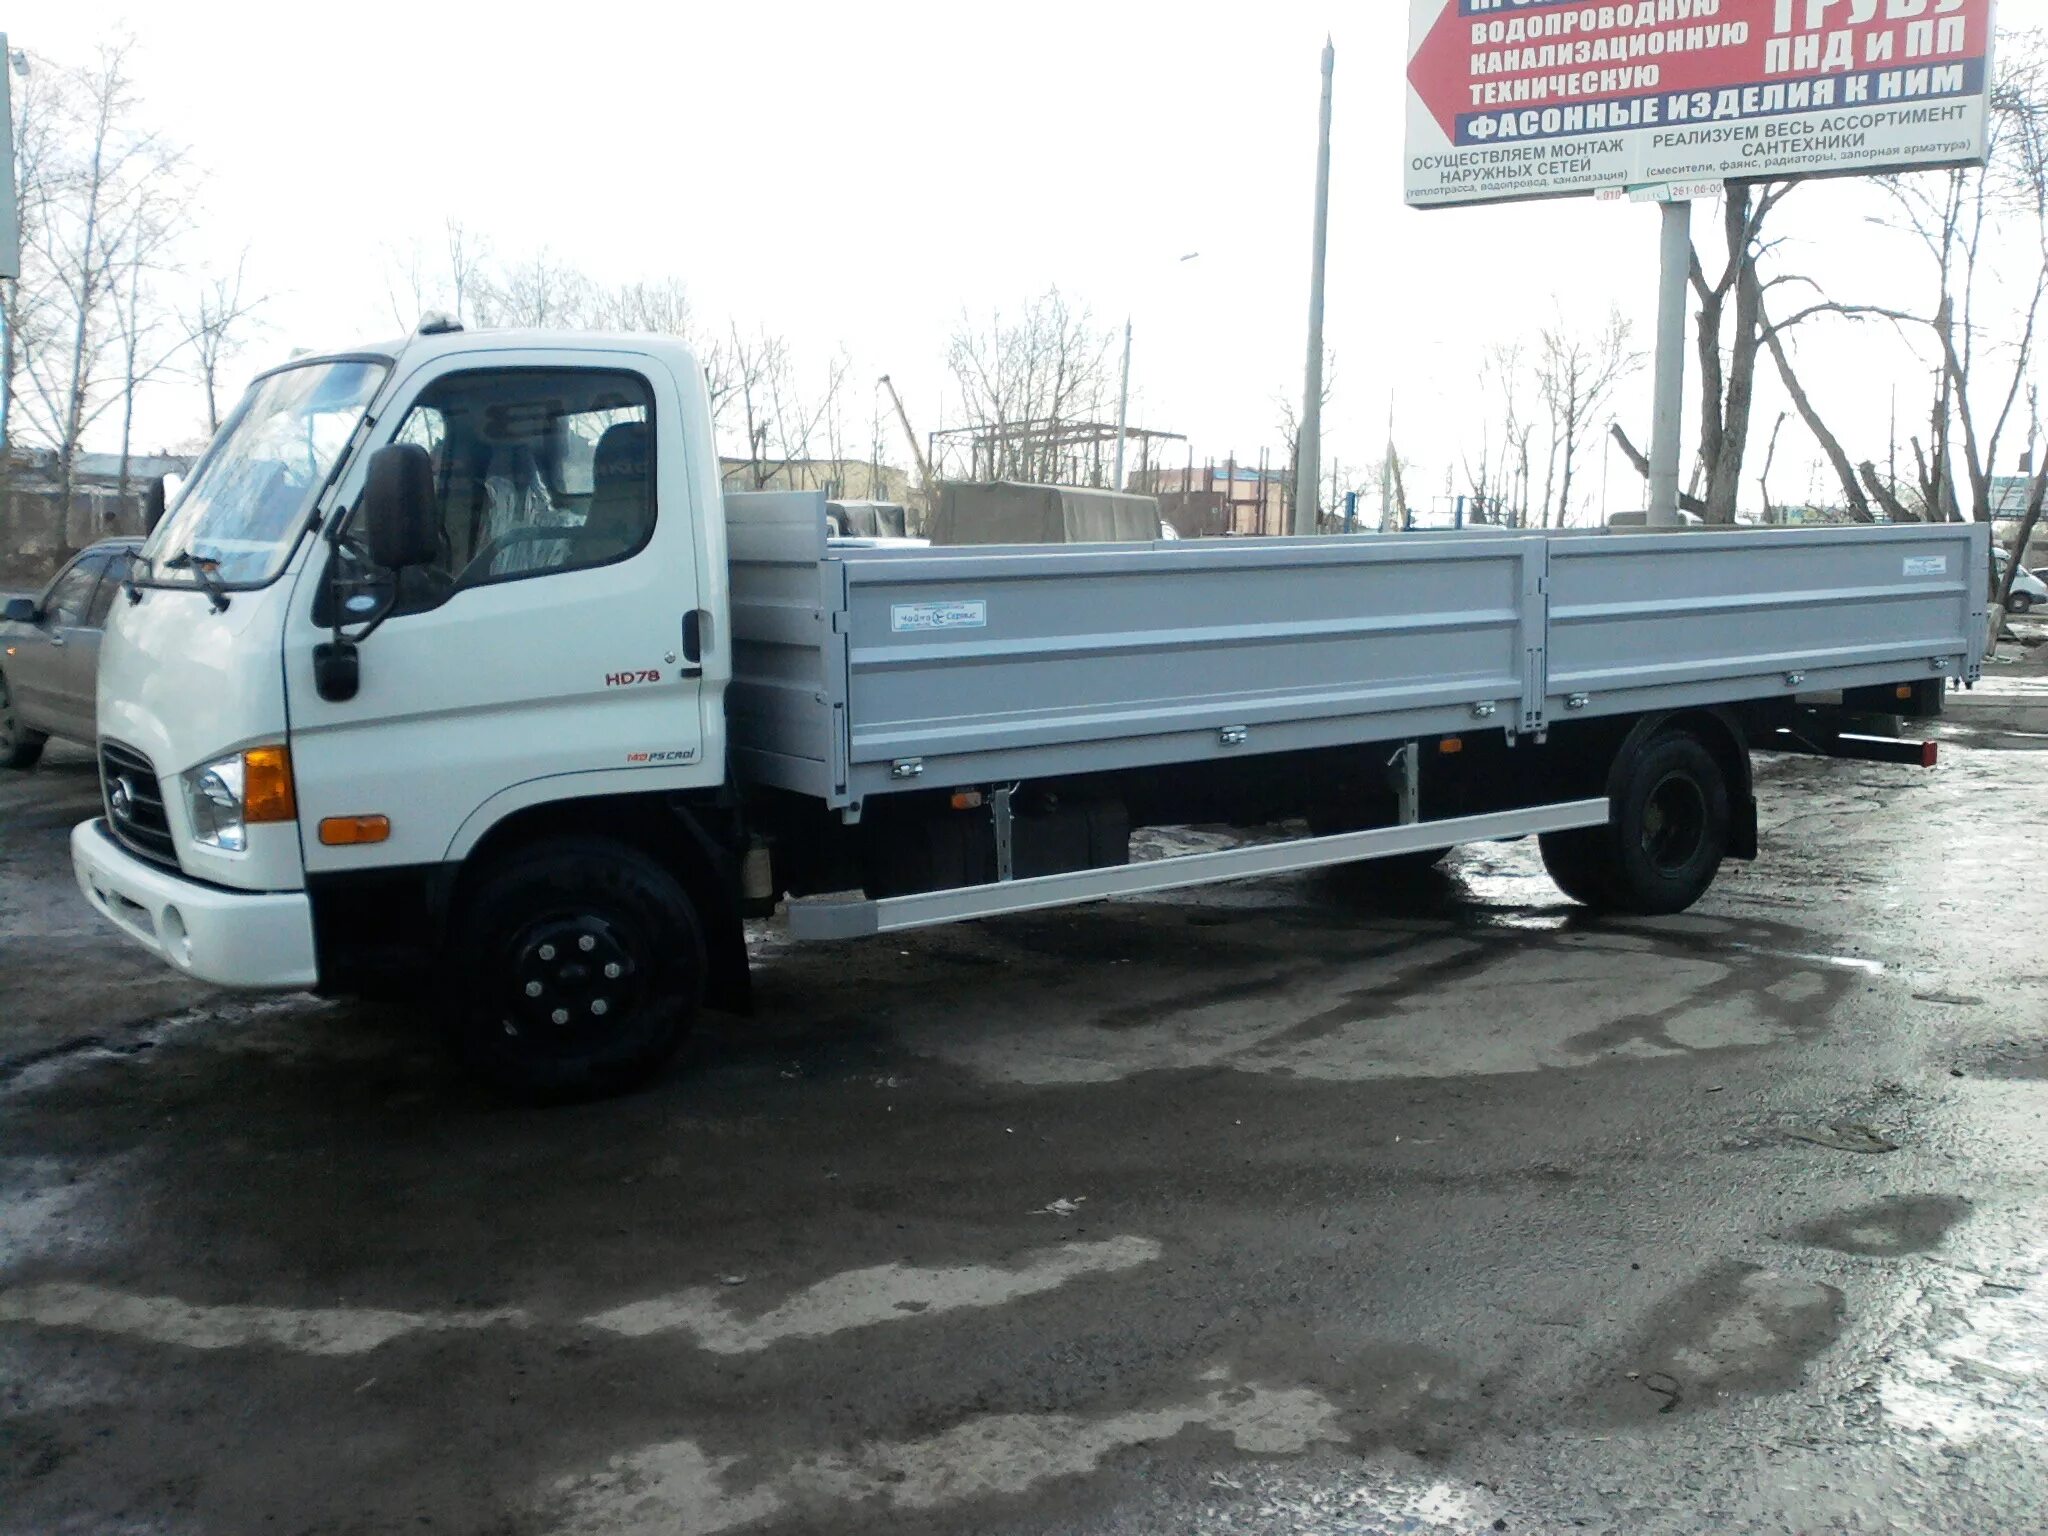 Бортовой грузовик 5 тонн. Hd78 Hyundai 5 тн.